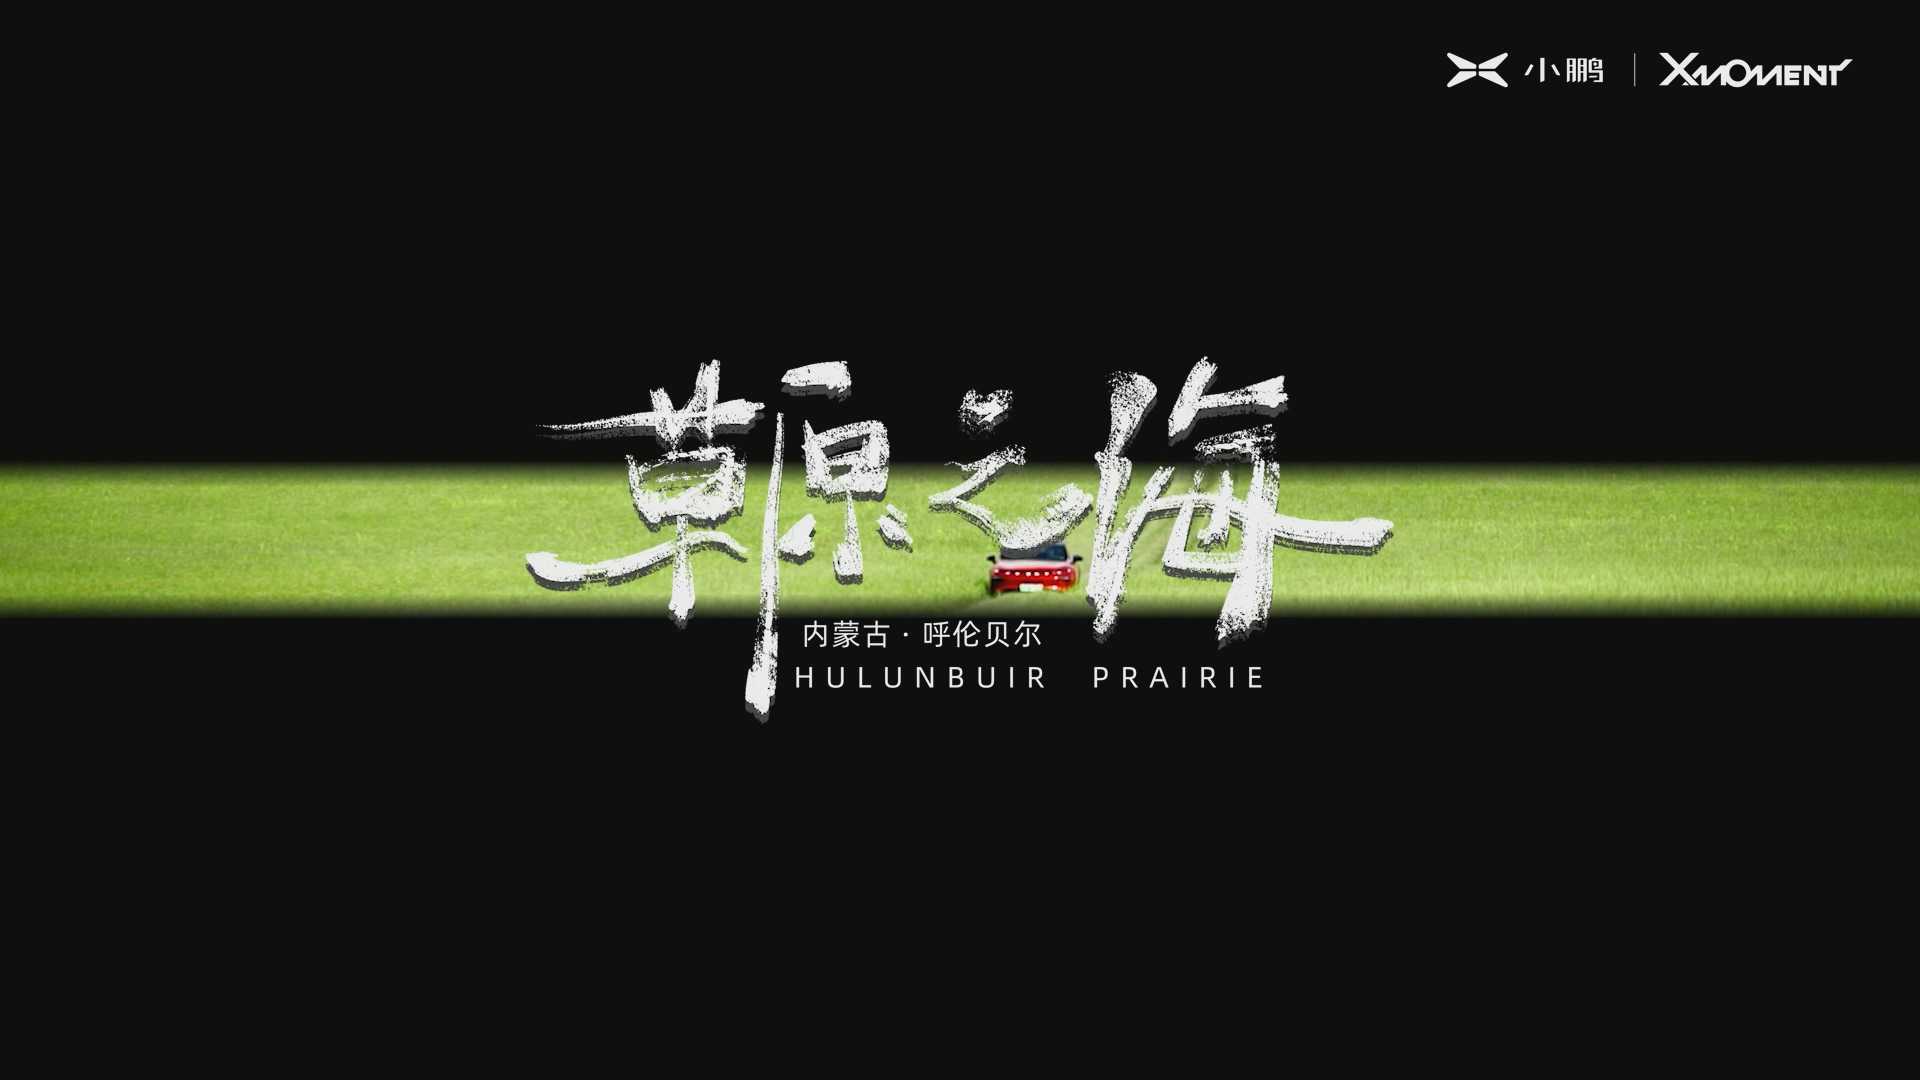 【短片】小鹏X-momen草原之海——内蒙古访谈纪录片